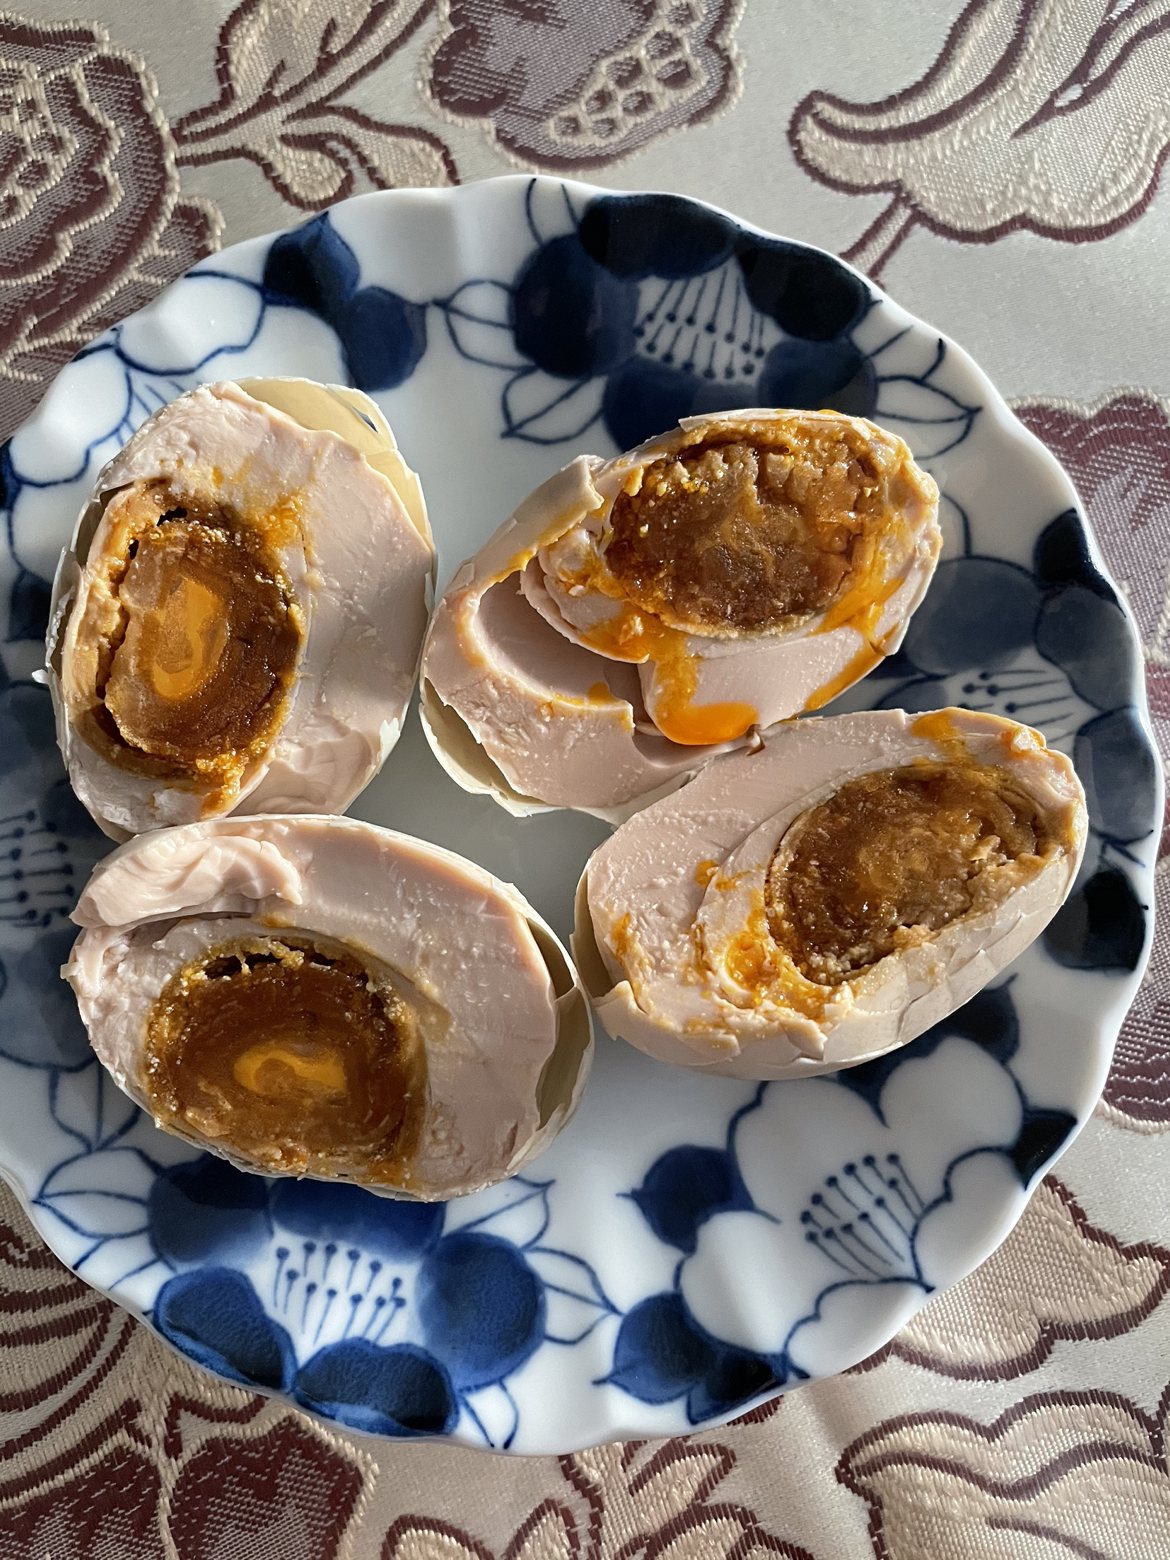 我们为您提供正宗烤鸭蛋的优质评价,包括正宗烤鸭蛋商品评价,晒单